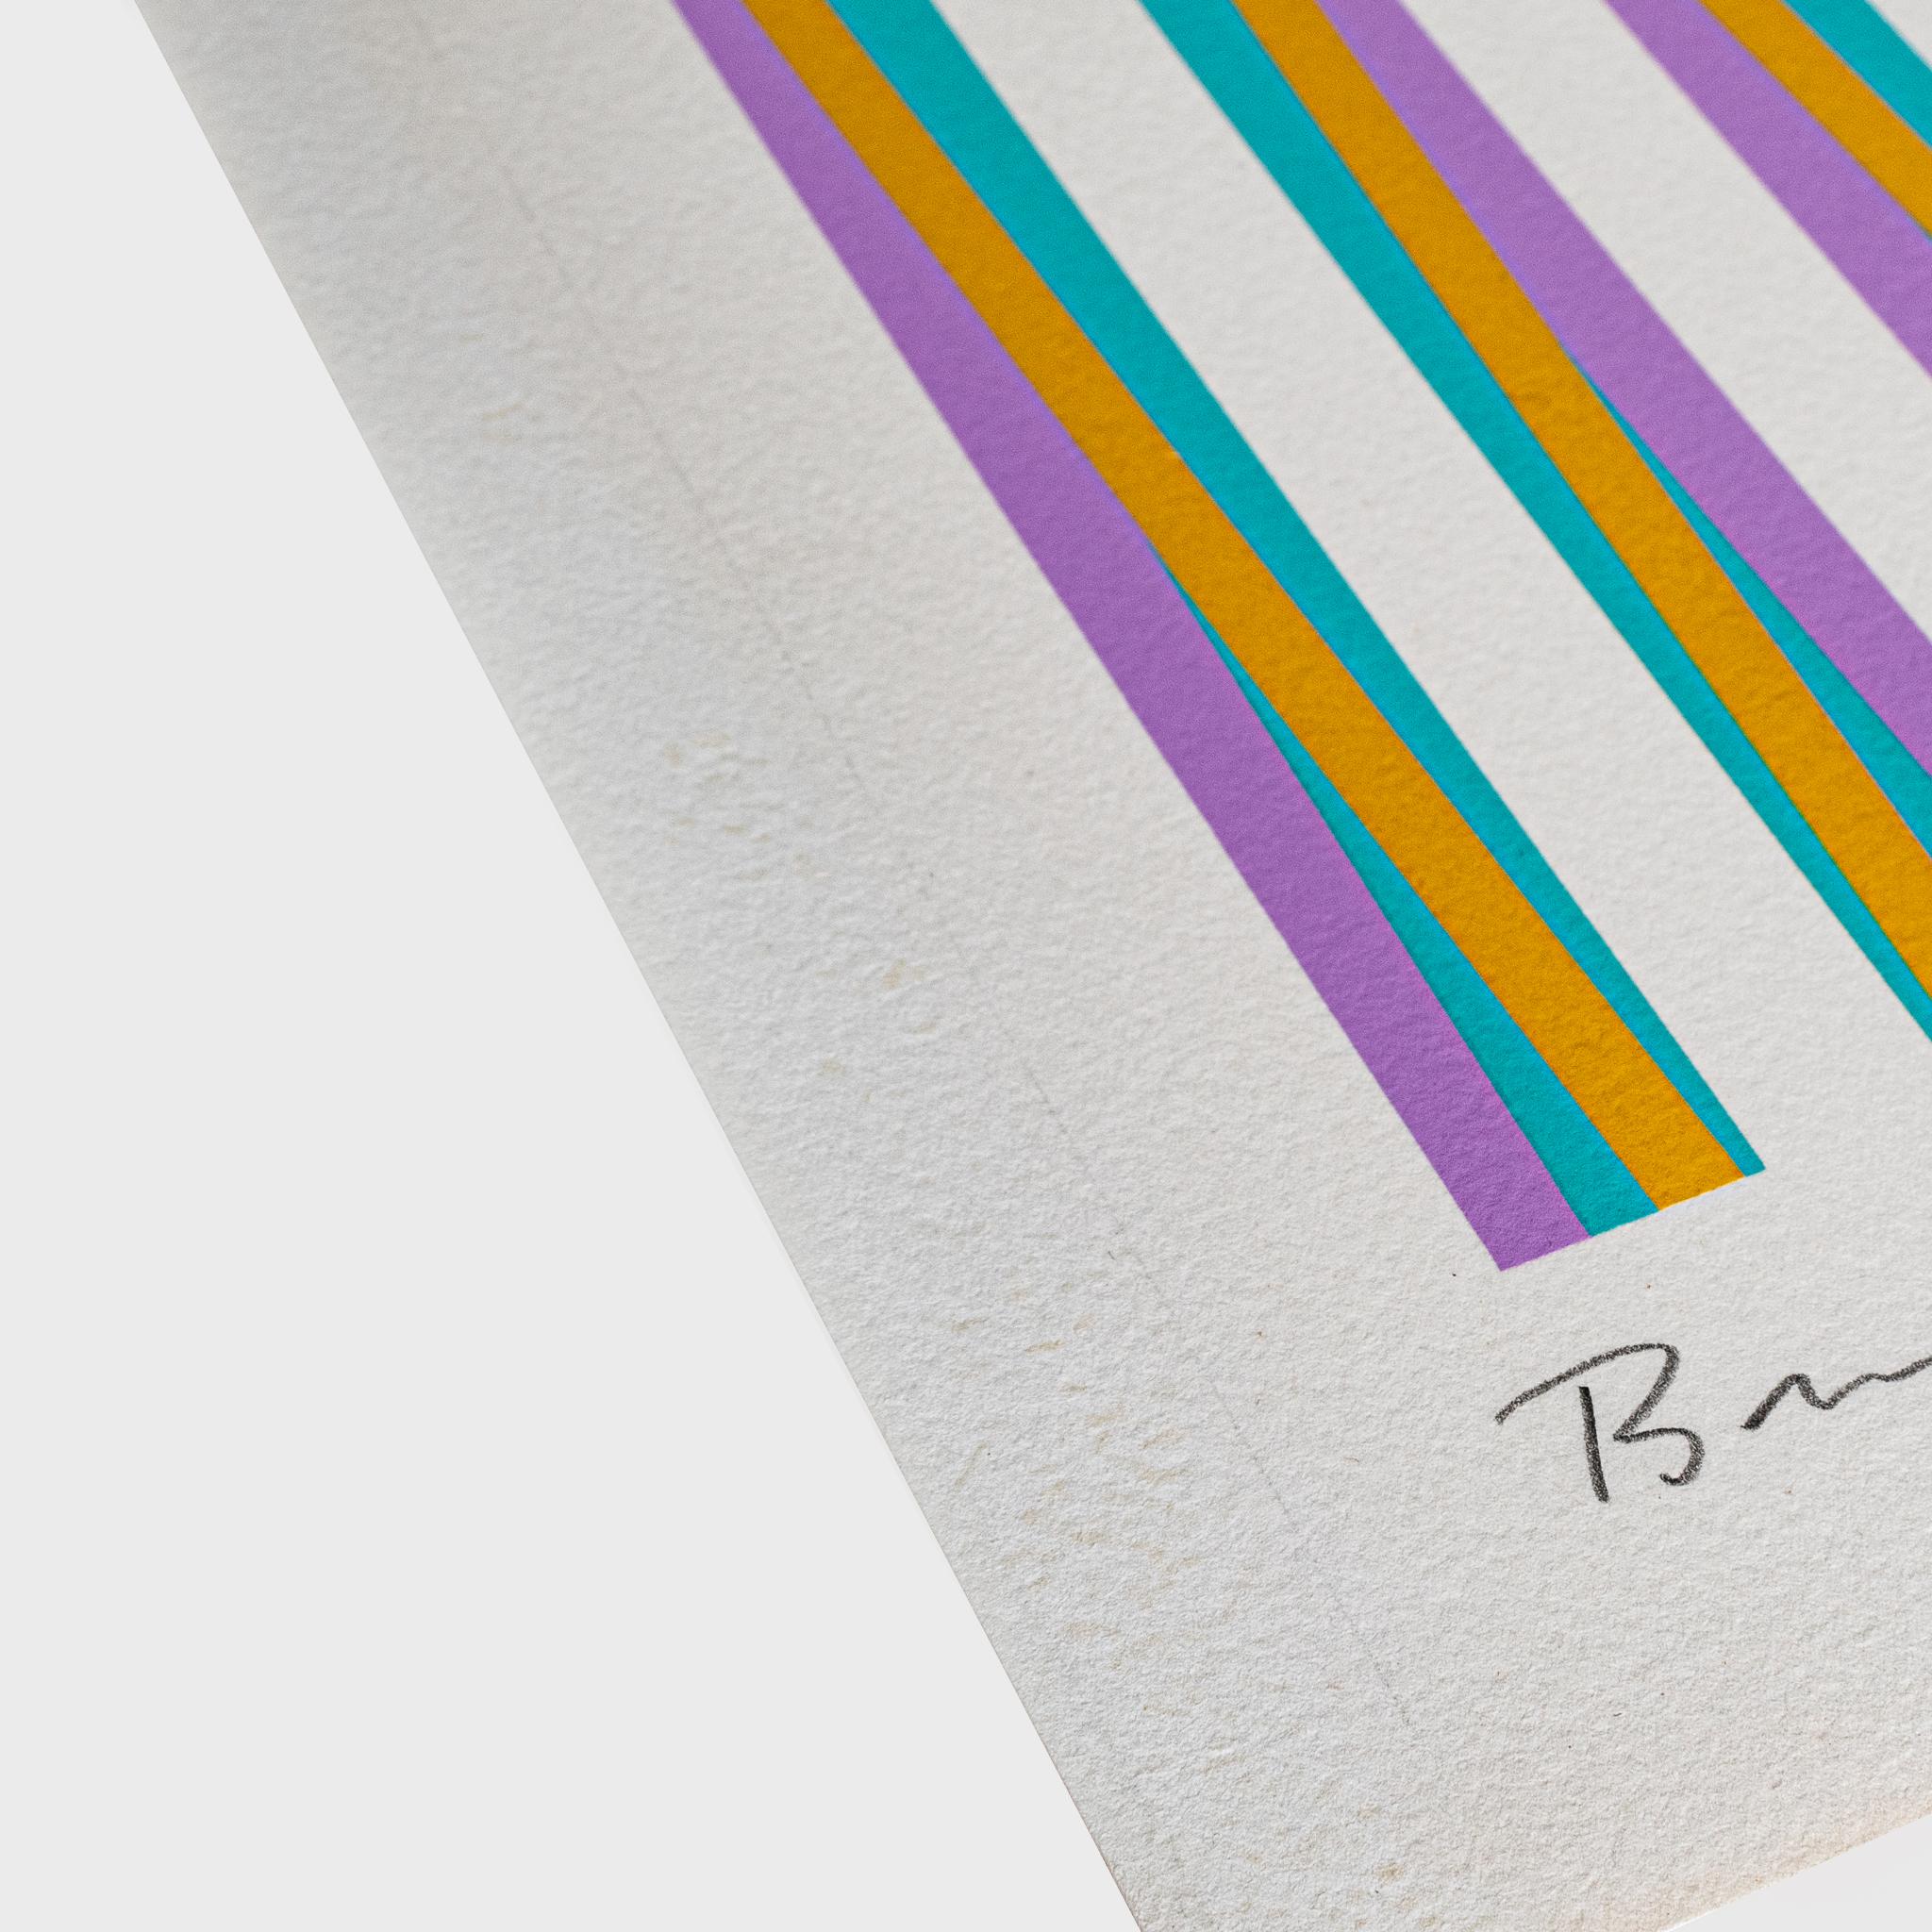 Sérigraphie couleur sur papier vélin blanc
Edition de 150
61 x 46 cm (24 x 18.1 in)
Signé, numéroté et daté au recto. Initiale 